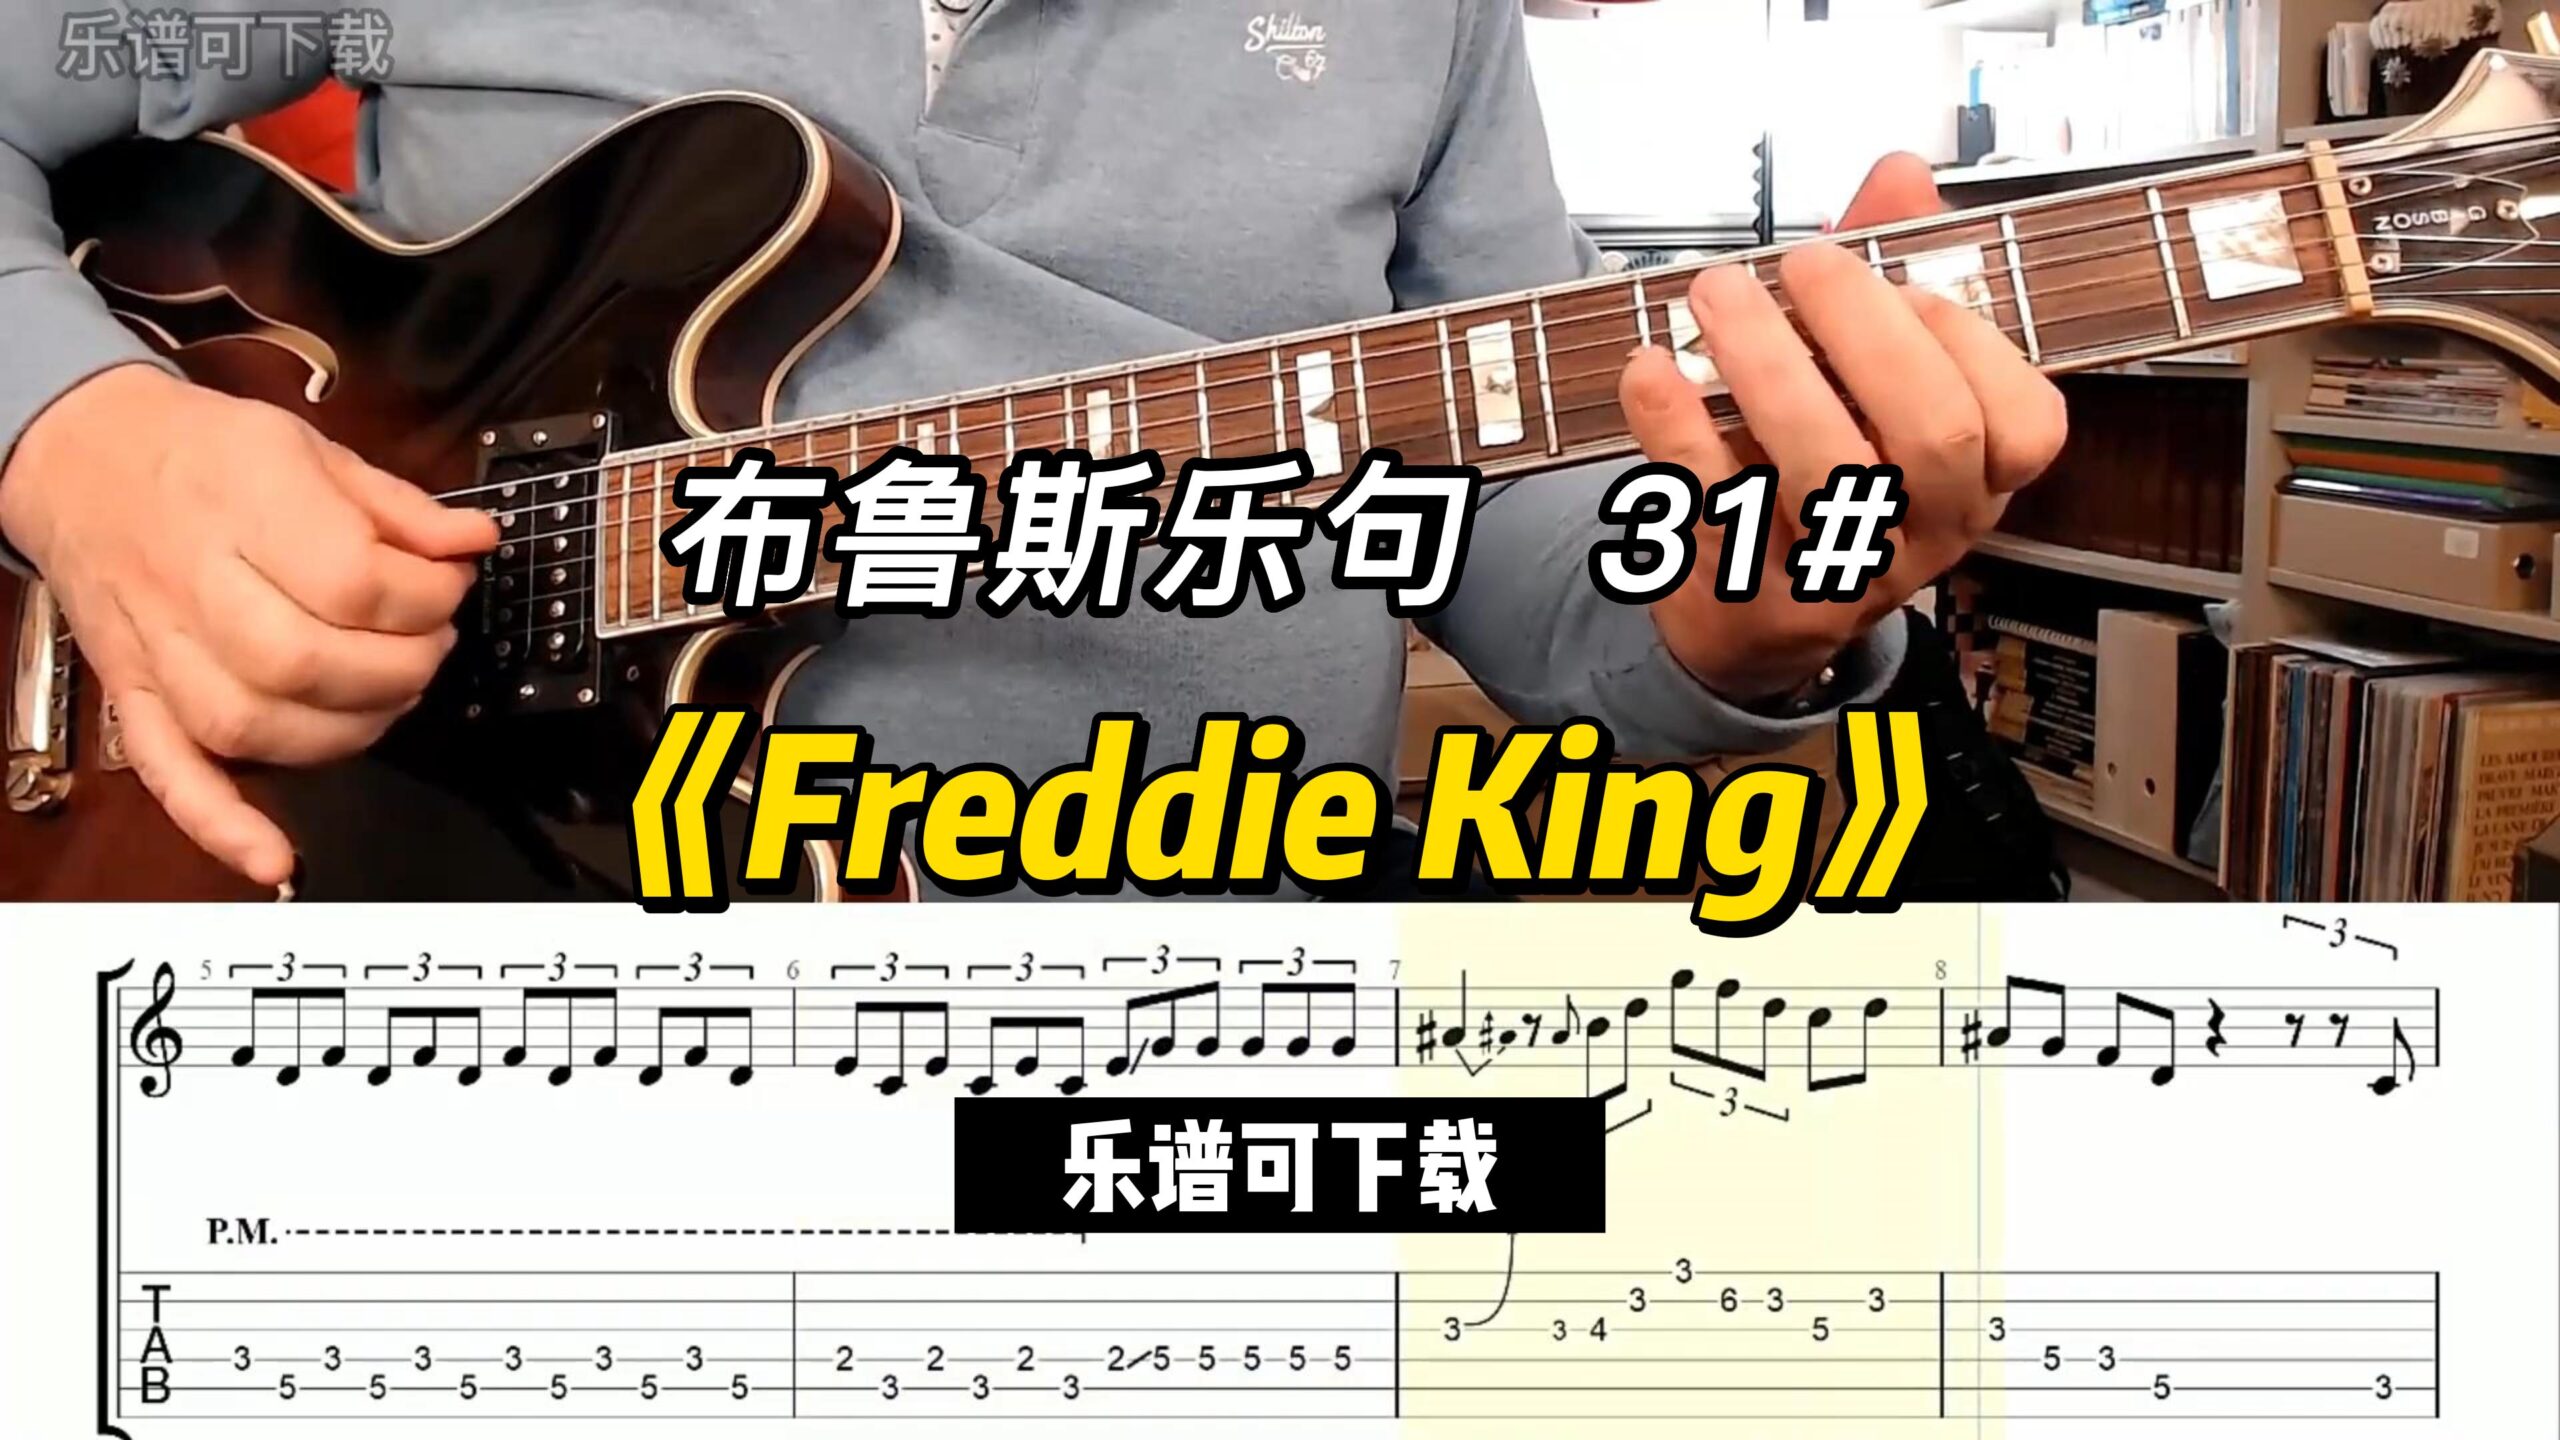 【布鲁斯乐句】《Freddie King》乐谱可下载-古桐博客